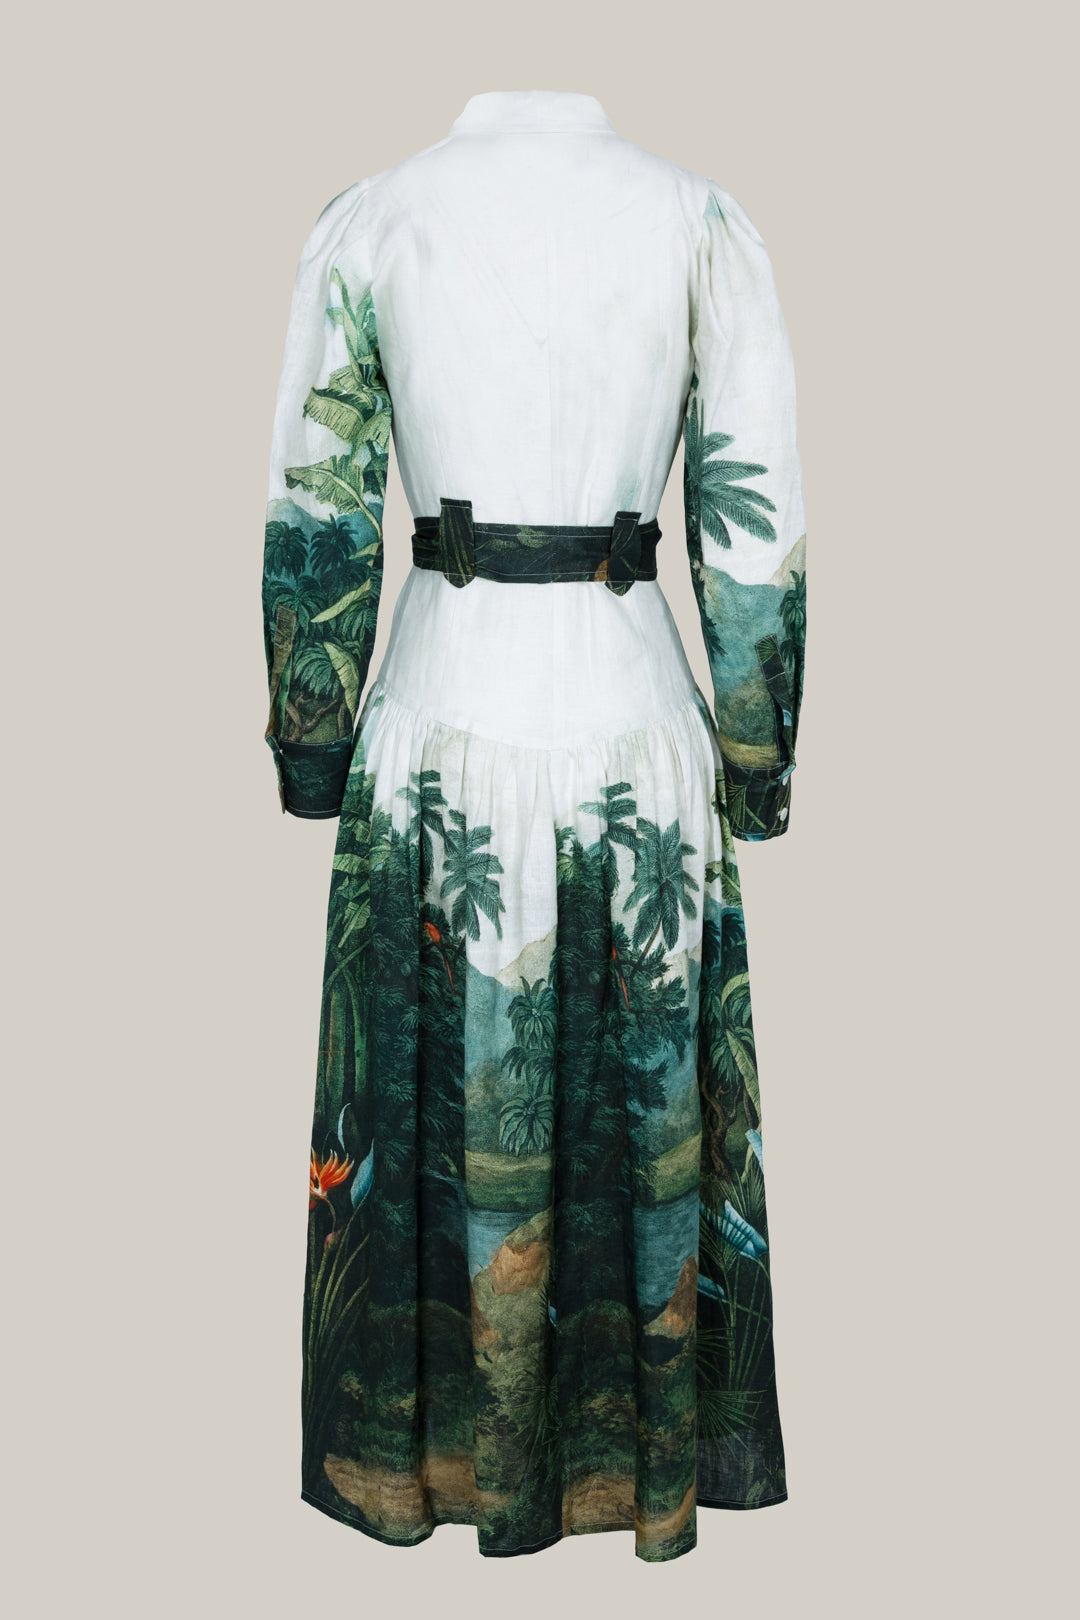 PALM TREE LINEN SHIRT DRESS